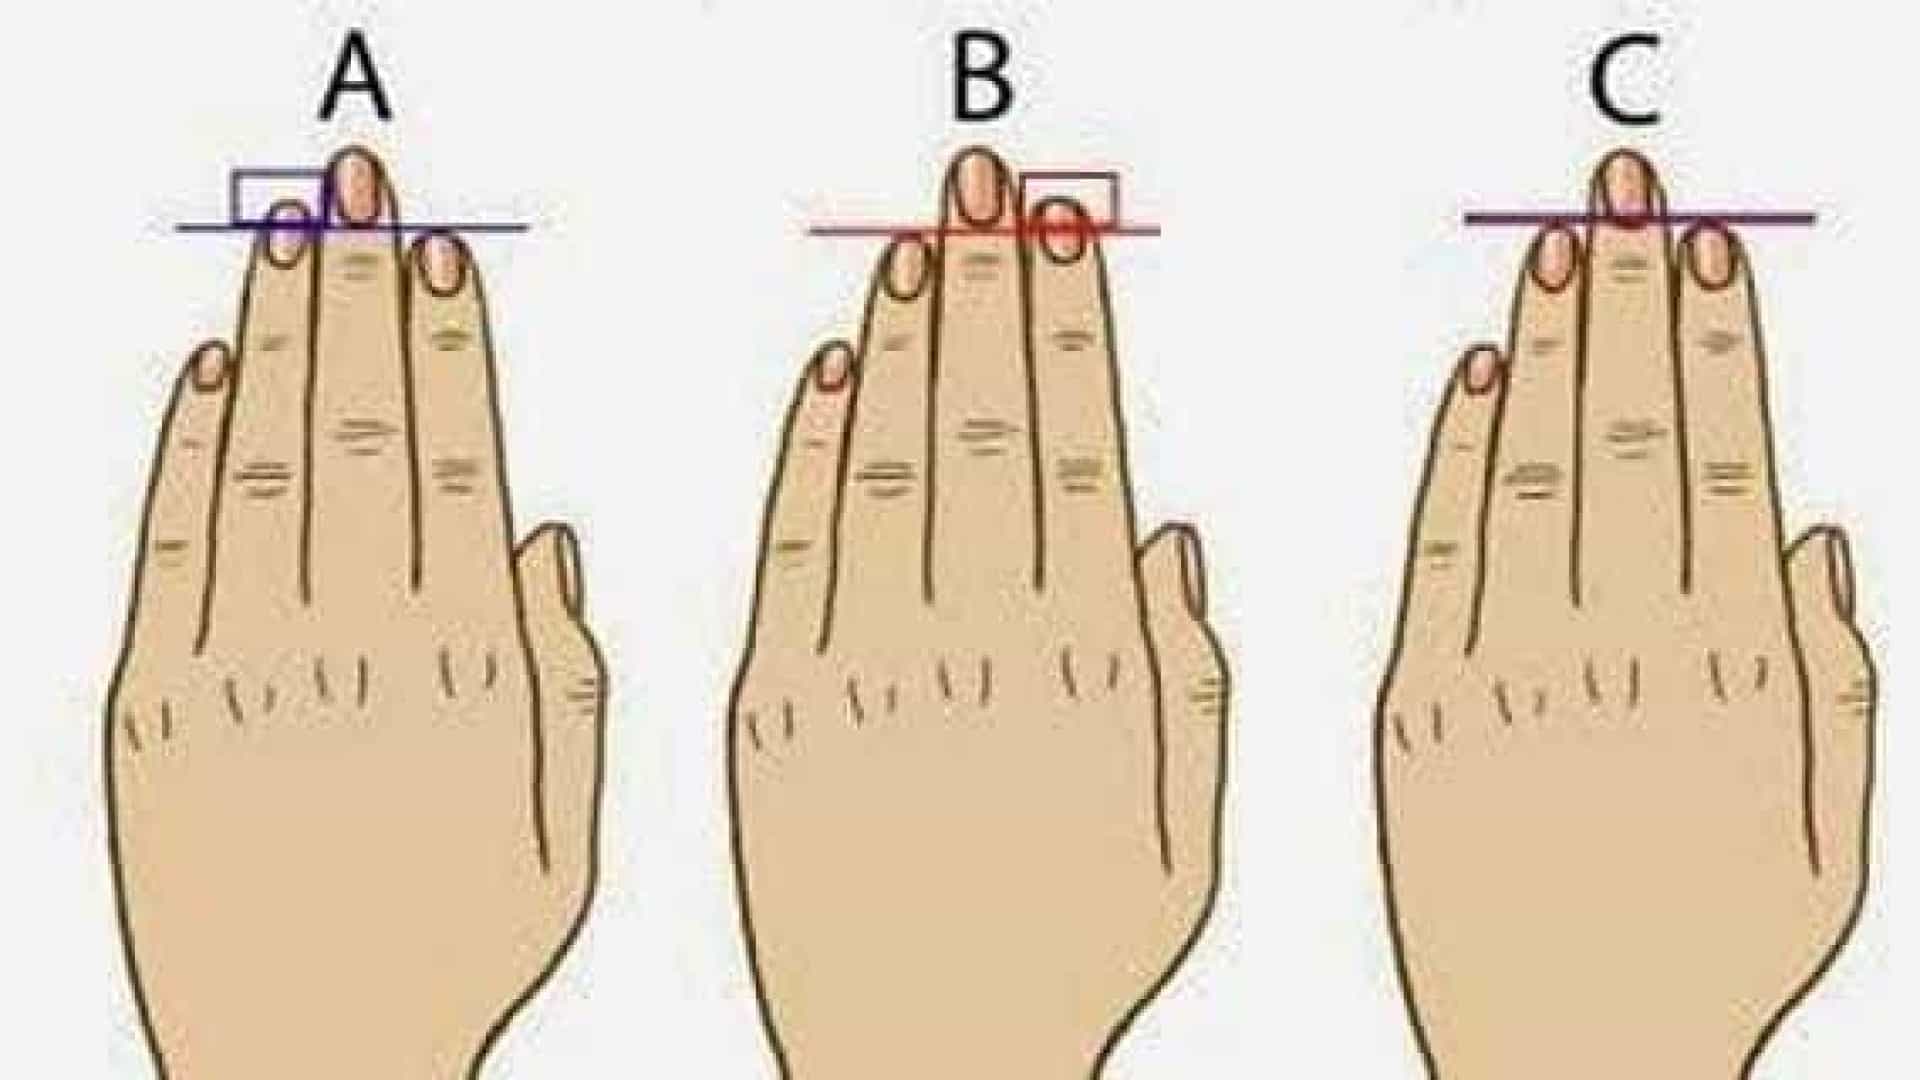 De acordo com o comprimento dos seus dedos o que você seria em